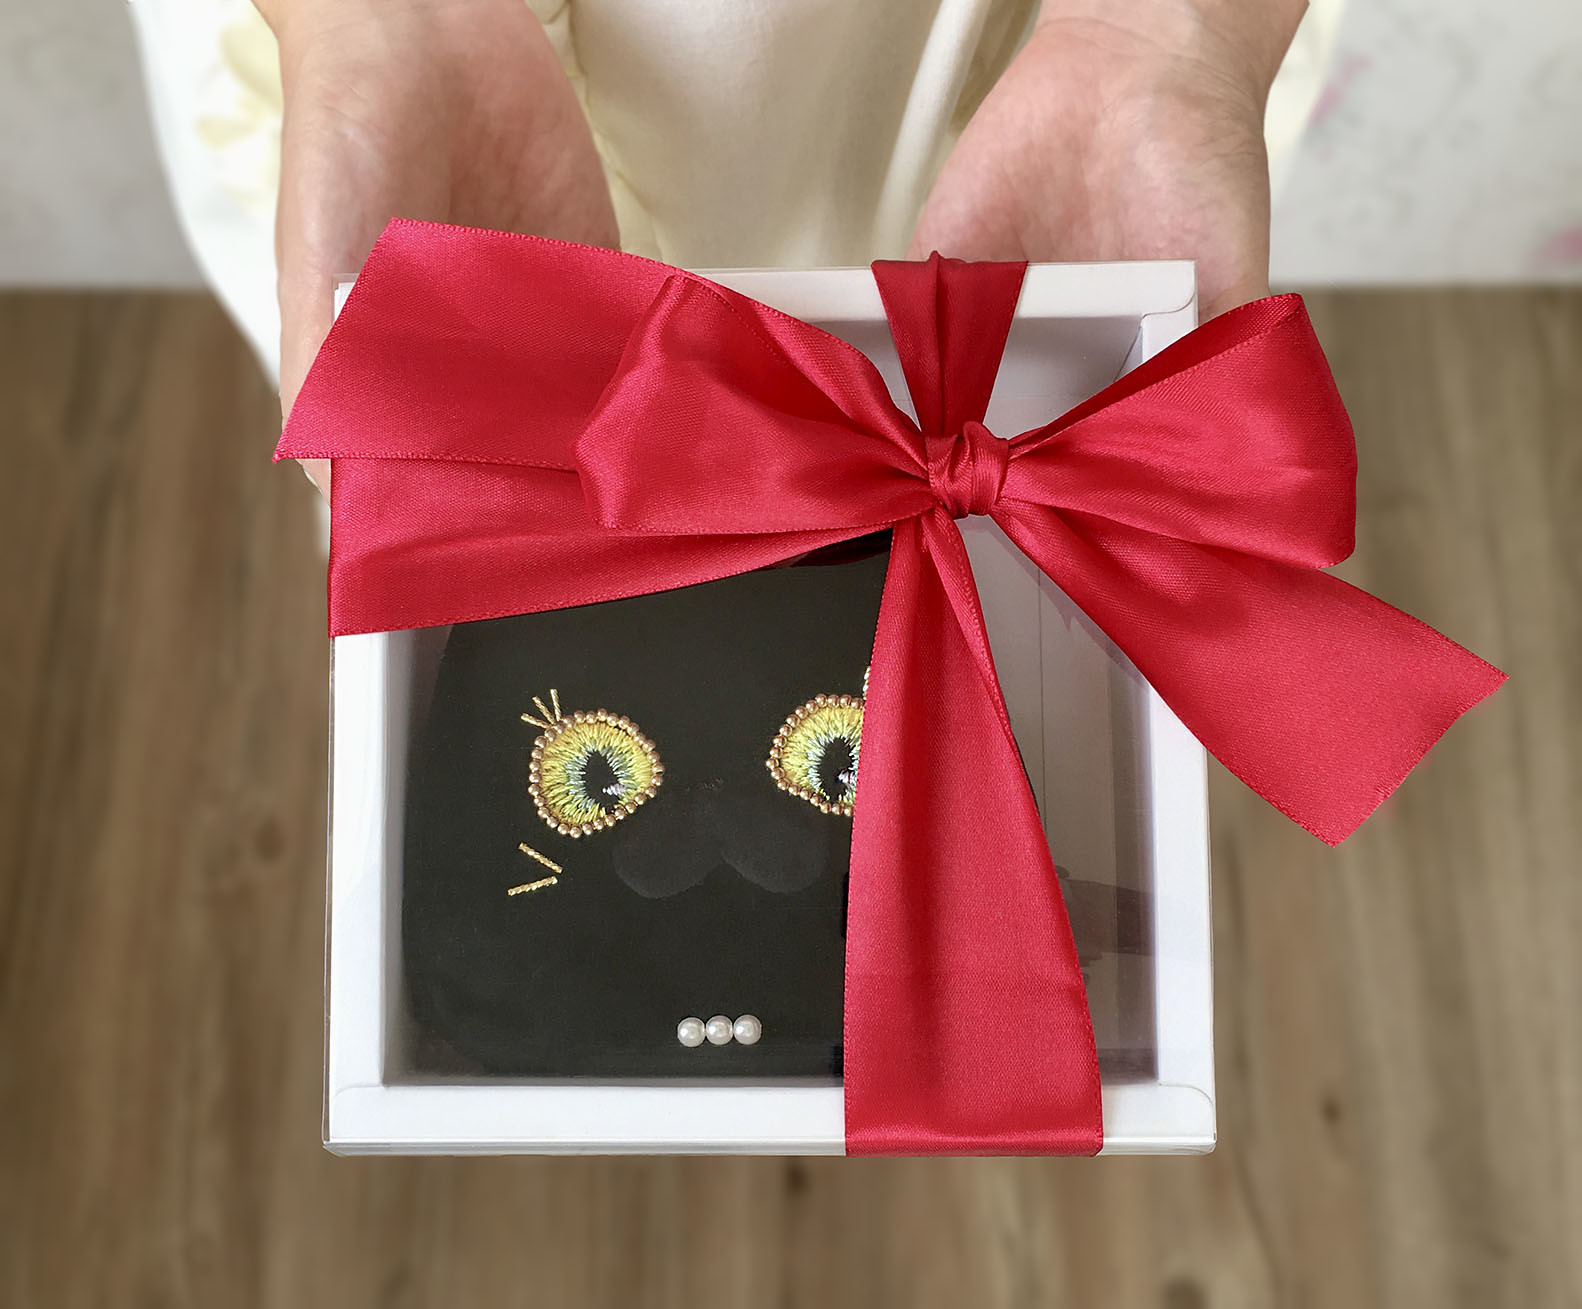 黑貓夫人短夾以透明蓋子的白色紙盒包裝並有紅色緞帶蝴蝶結